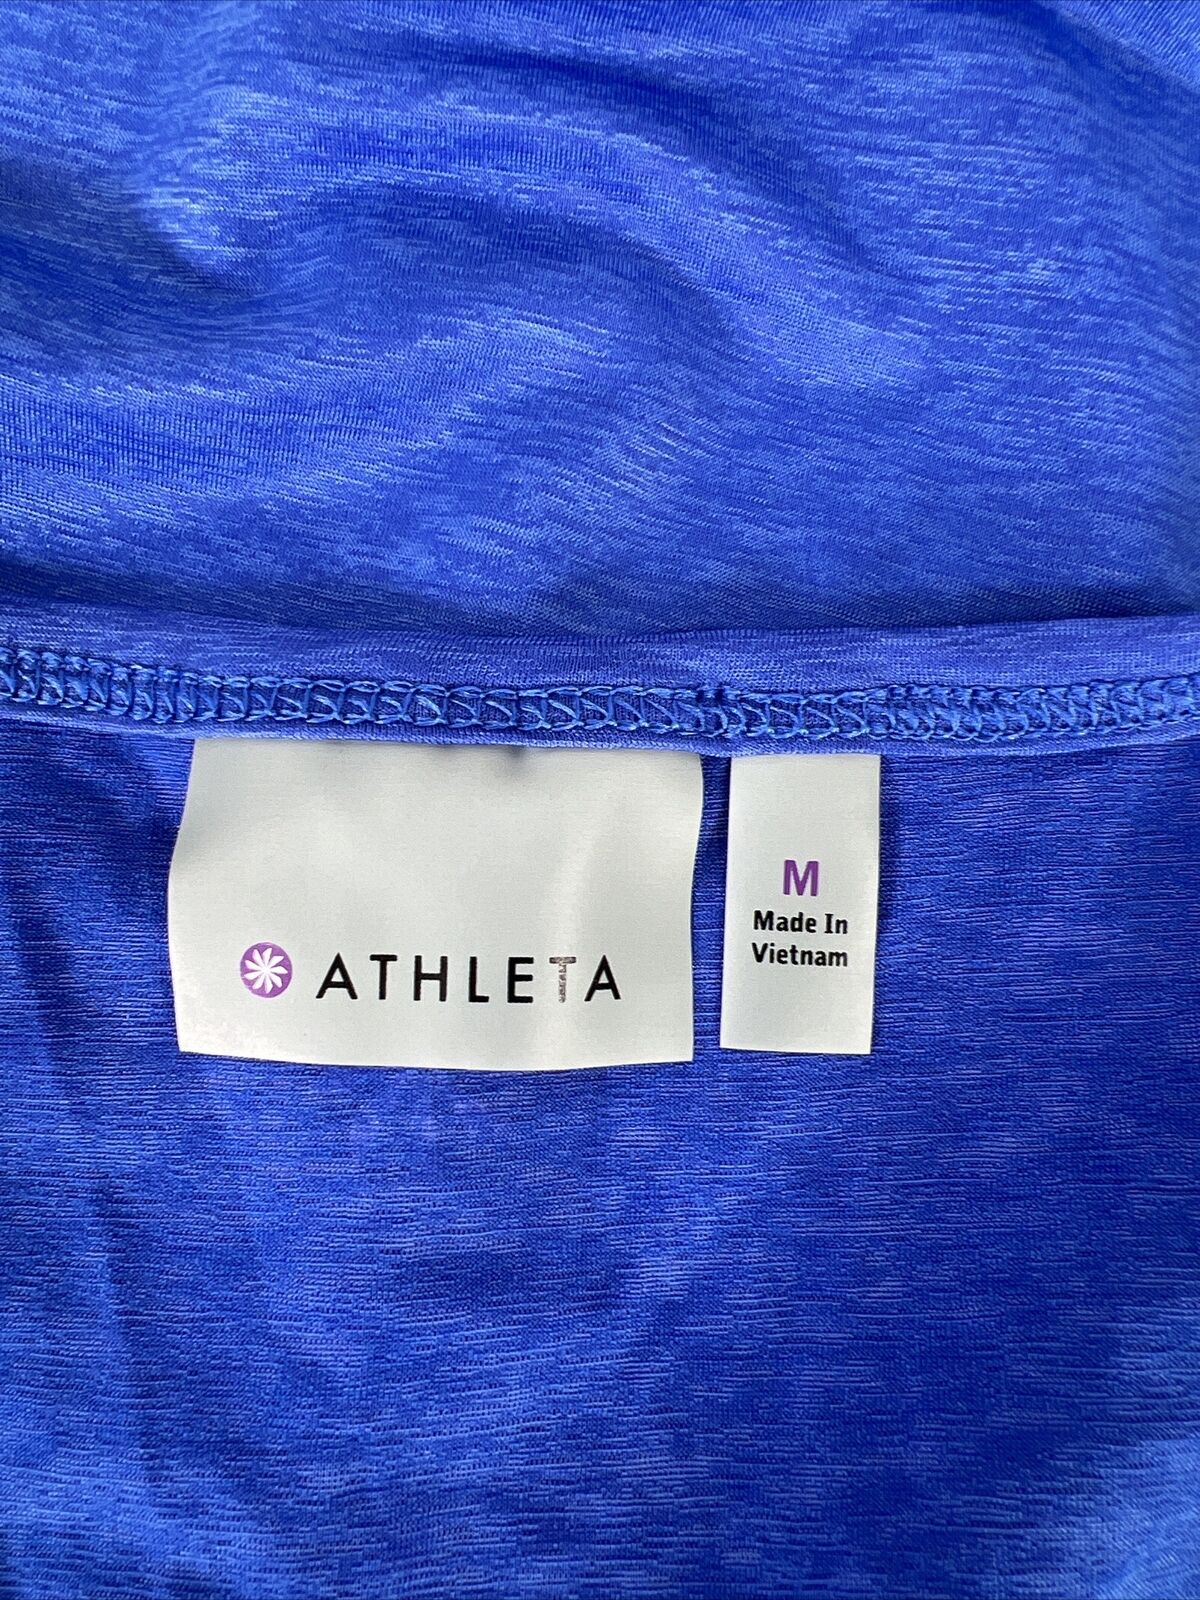 Athleta Camiseta deportiva de manga corta con cuello en V azul para mujer - M